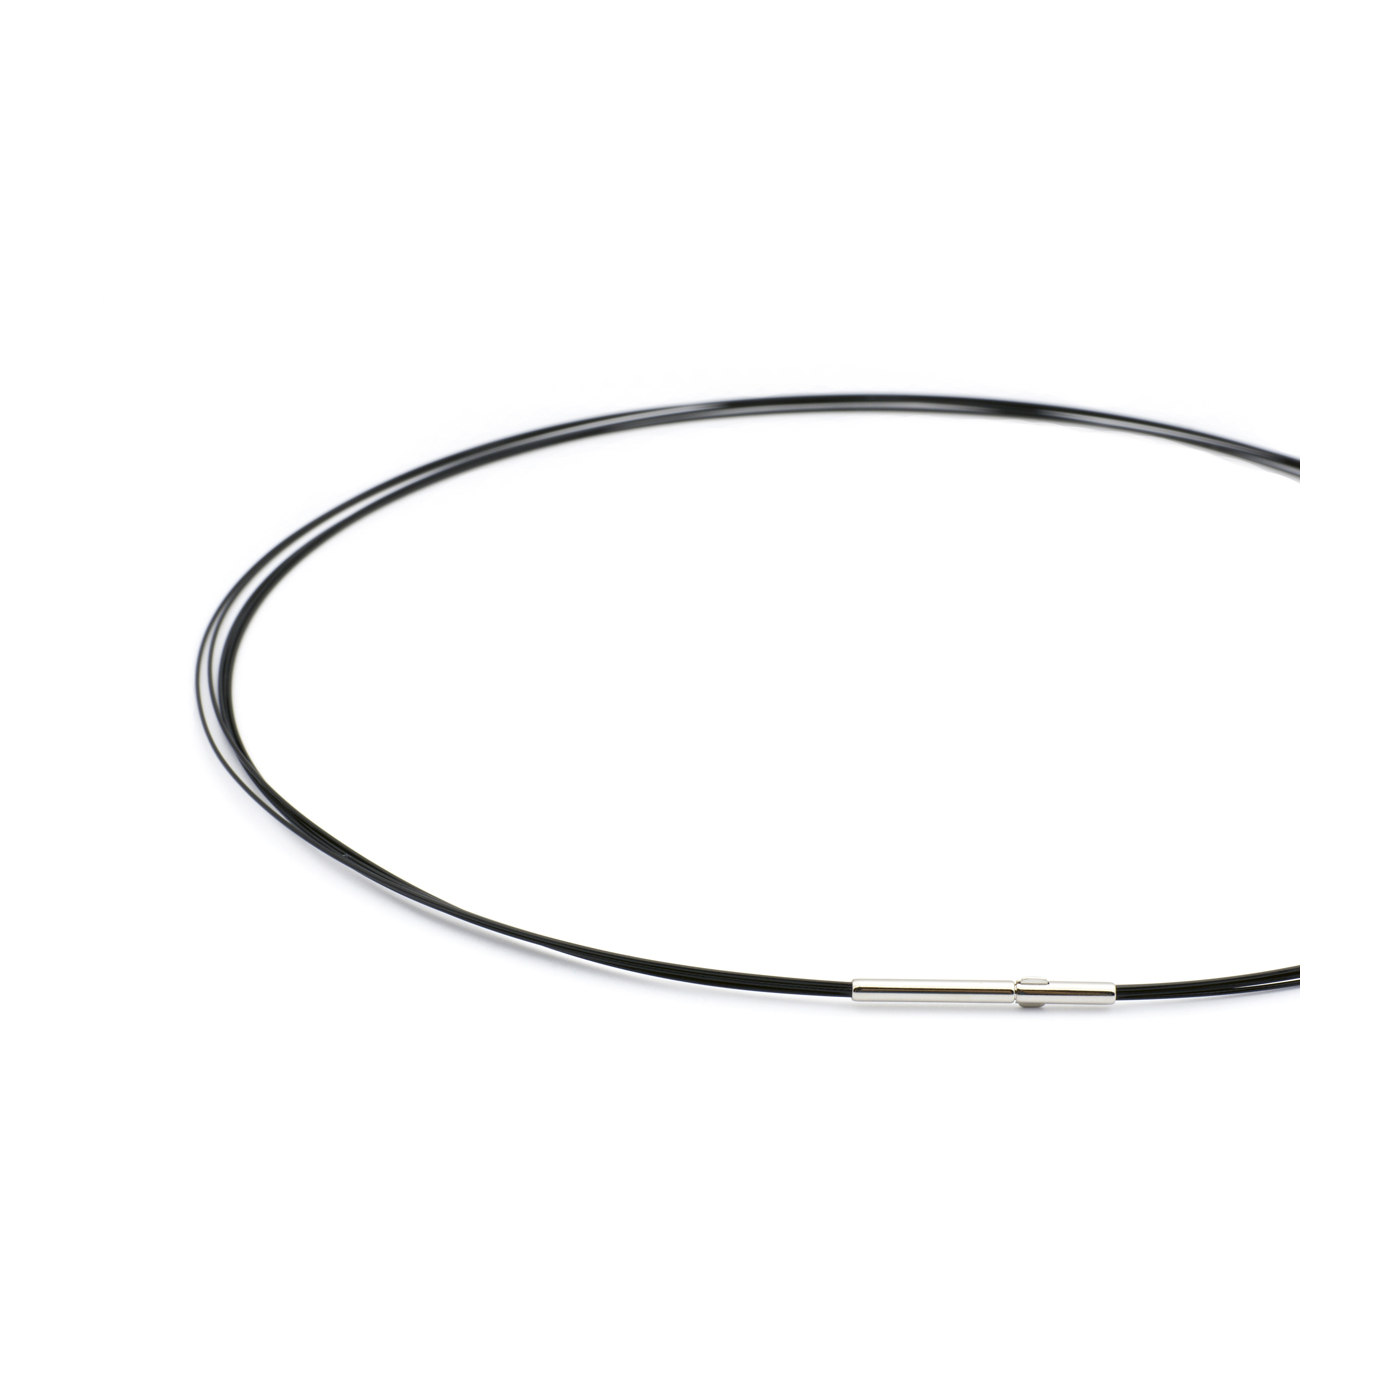 Rope Necklace, Black, 5 Rows, 45 cm - 1 piece